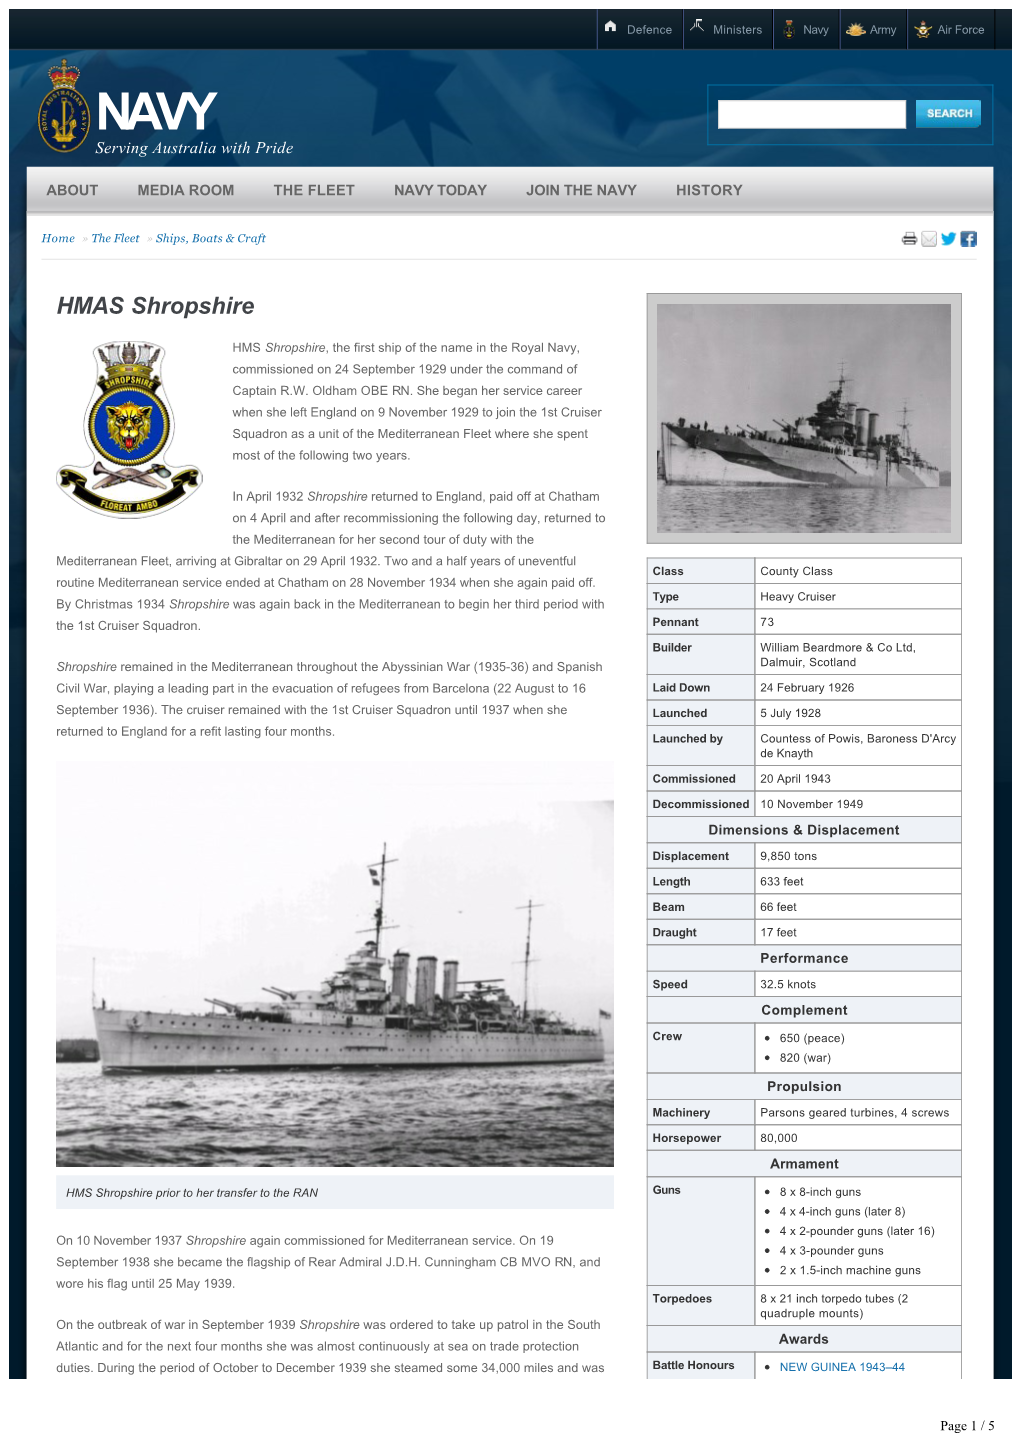 HMAS Shropshire